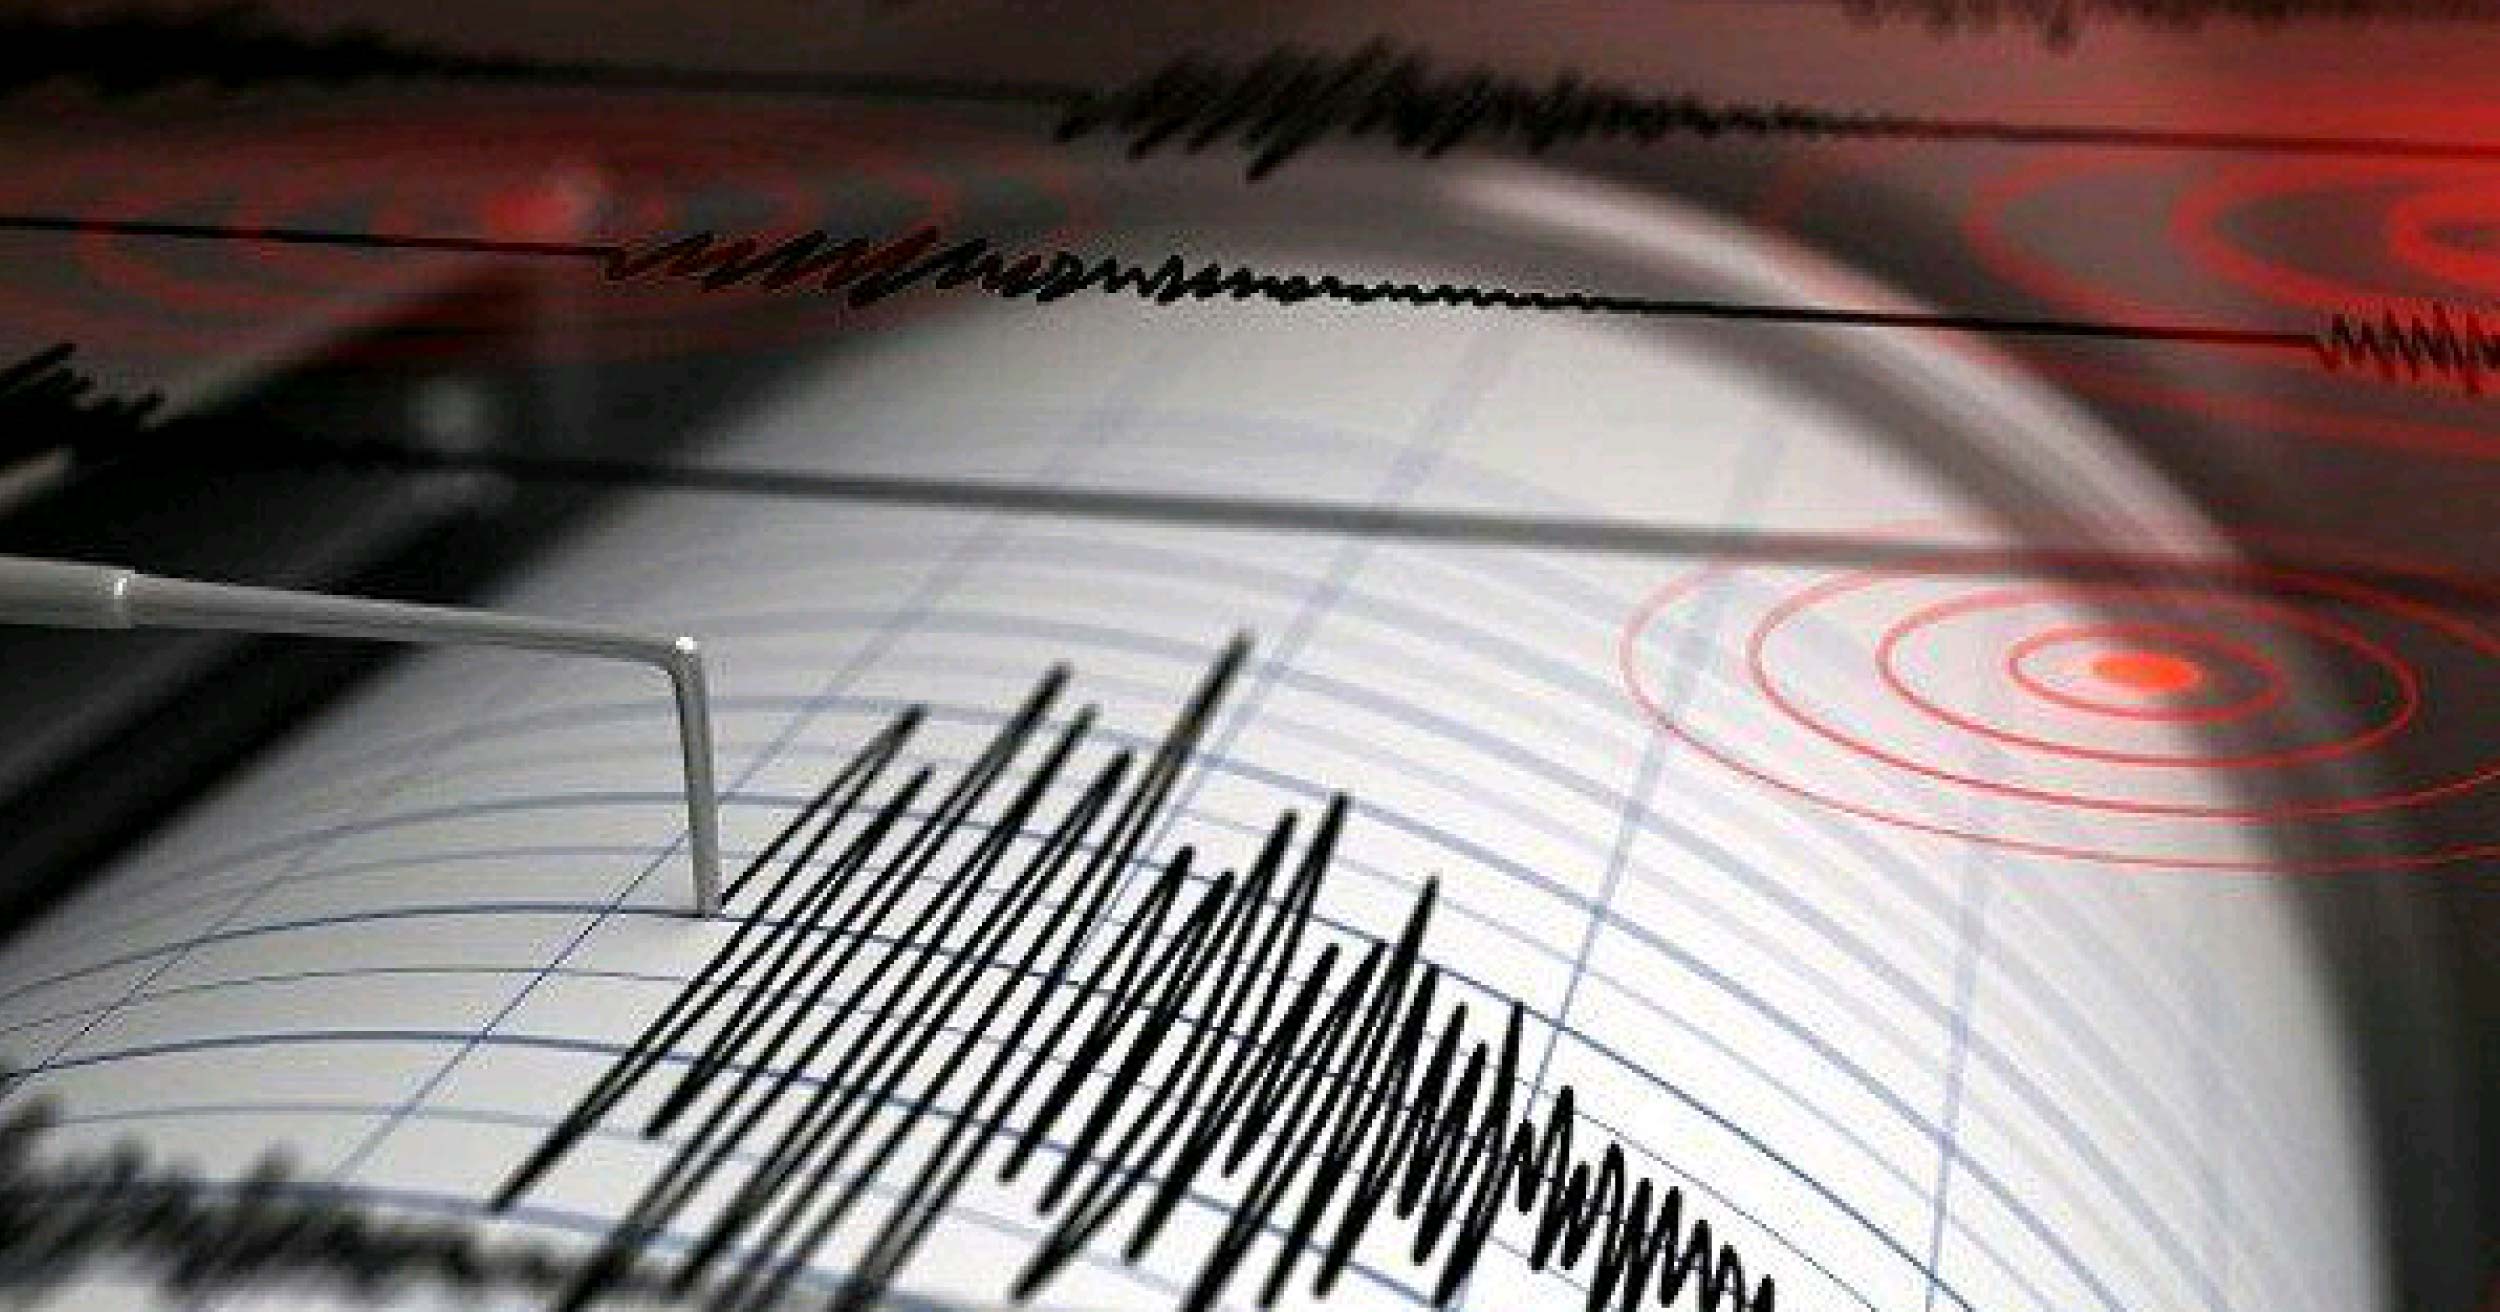 Se registró fuerte sismo de magnitud 6.0 en Colombia #15Abr